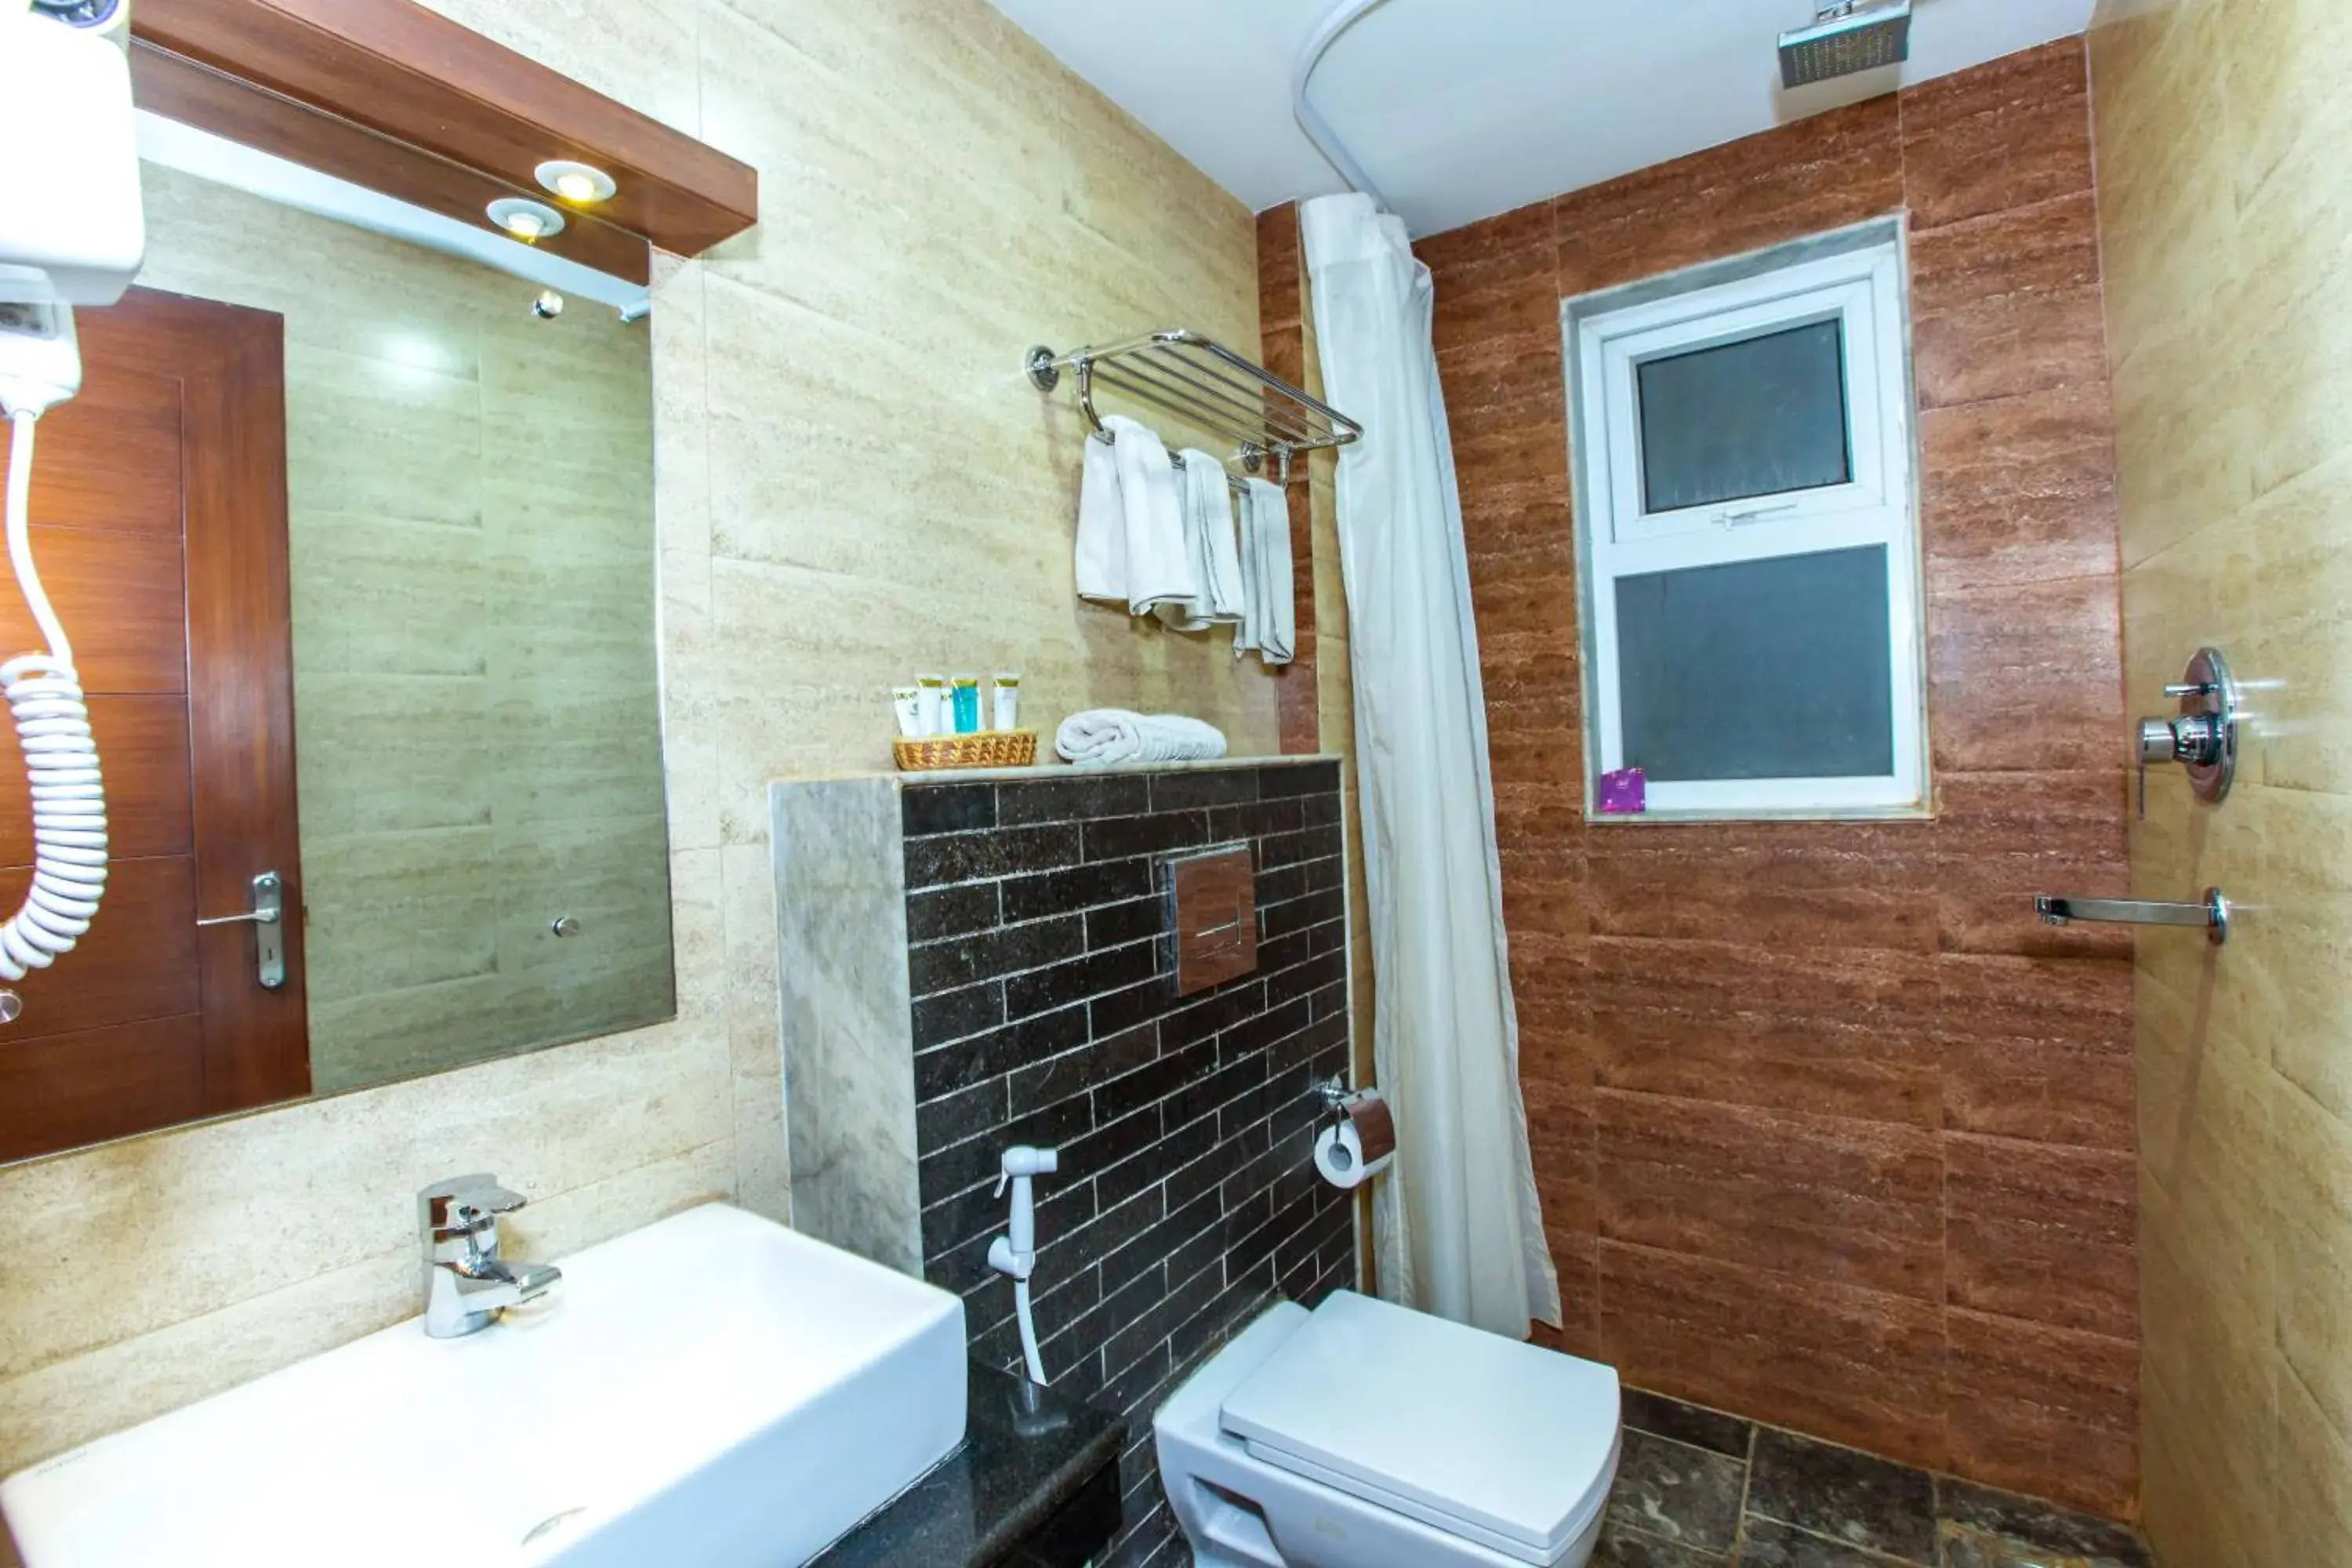 Toilet, Bathroom in Kathmandu Suite Home